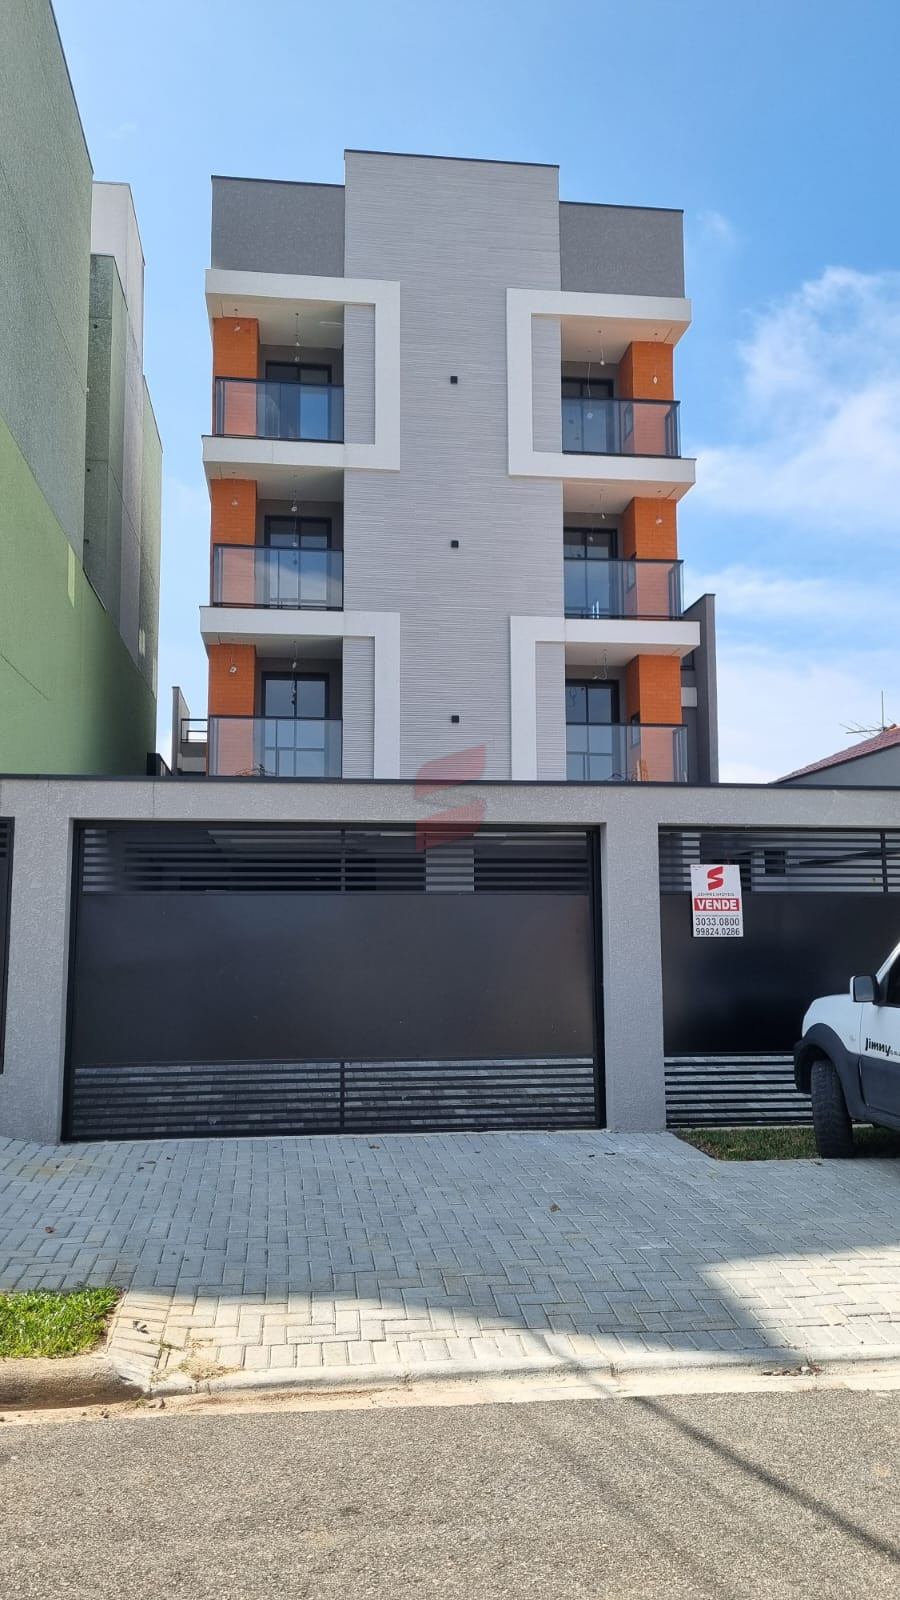 APARTAMENTO com 2 dormitórios à venda com 64.13m² por R$ 259.000,00 no bairro Afonso Pena - SÃO JOSÉ DOS PINHAIS / PR